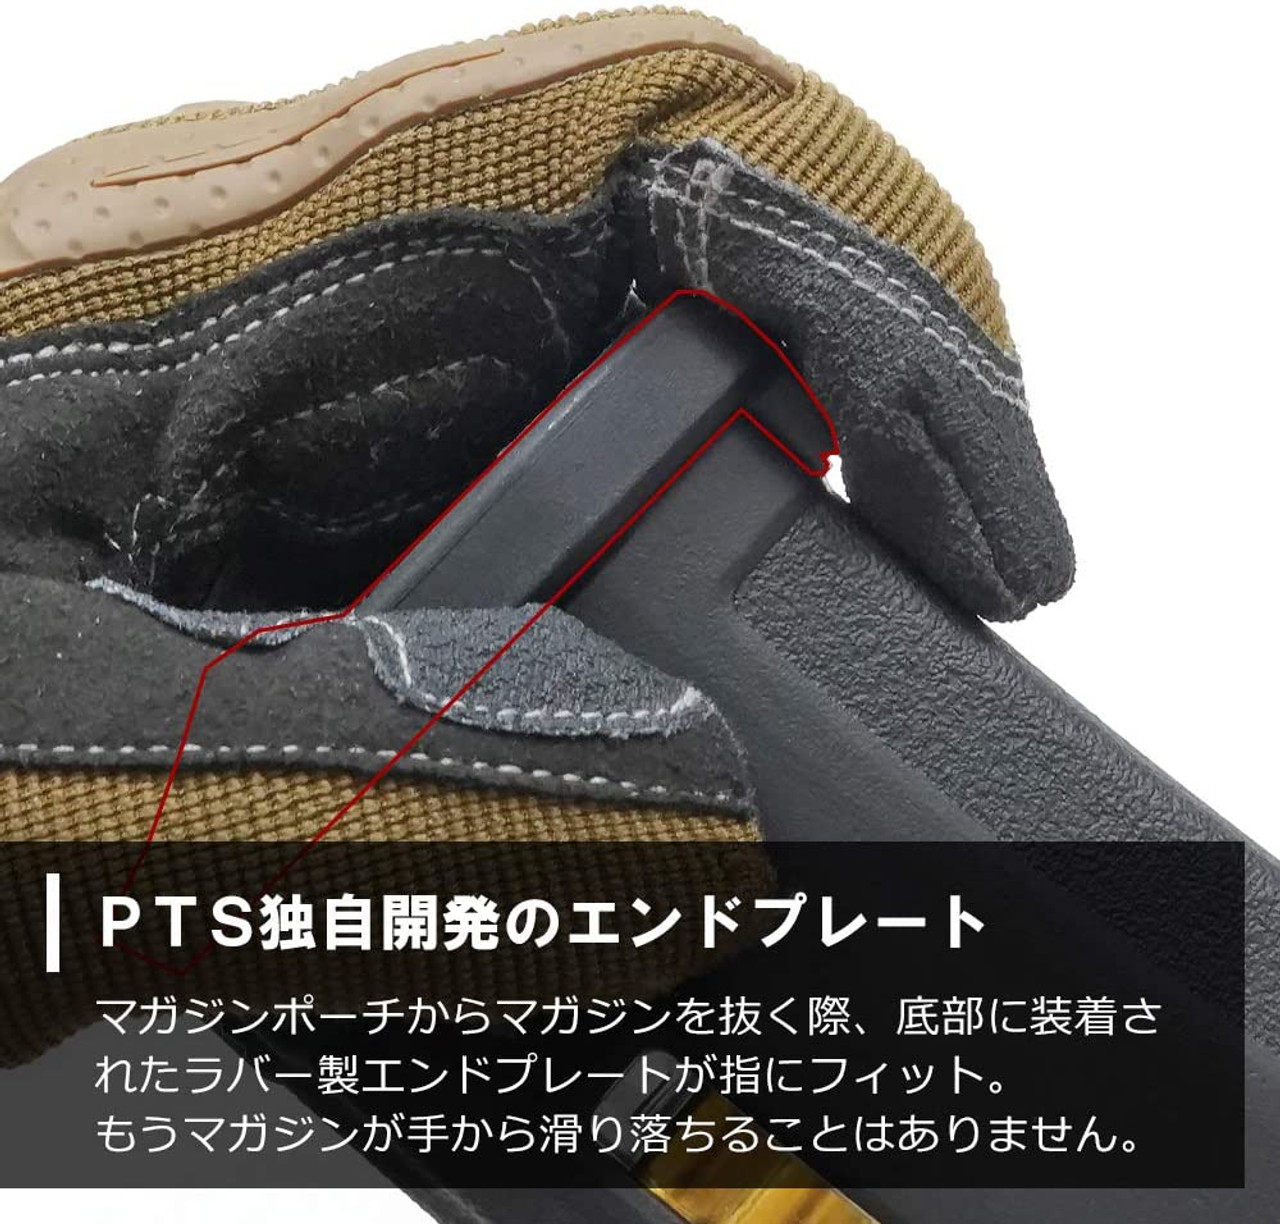 PTS 5 set of Tokyo Marui Next Generation SOPMOD M4 CQBR Compatible EPM ...